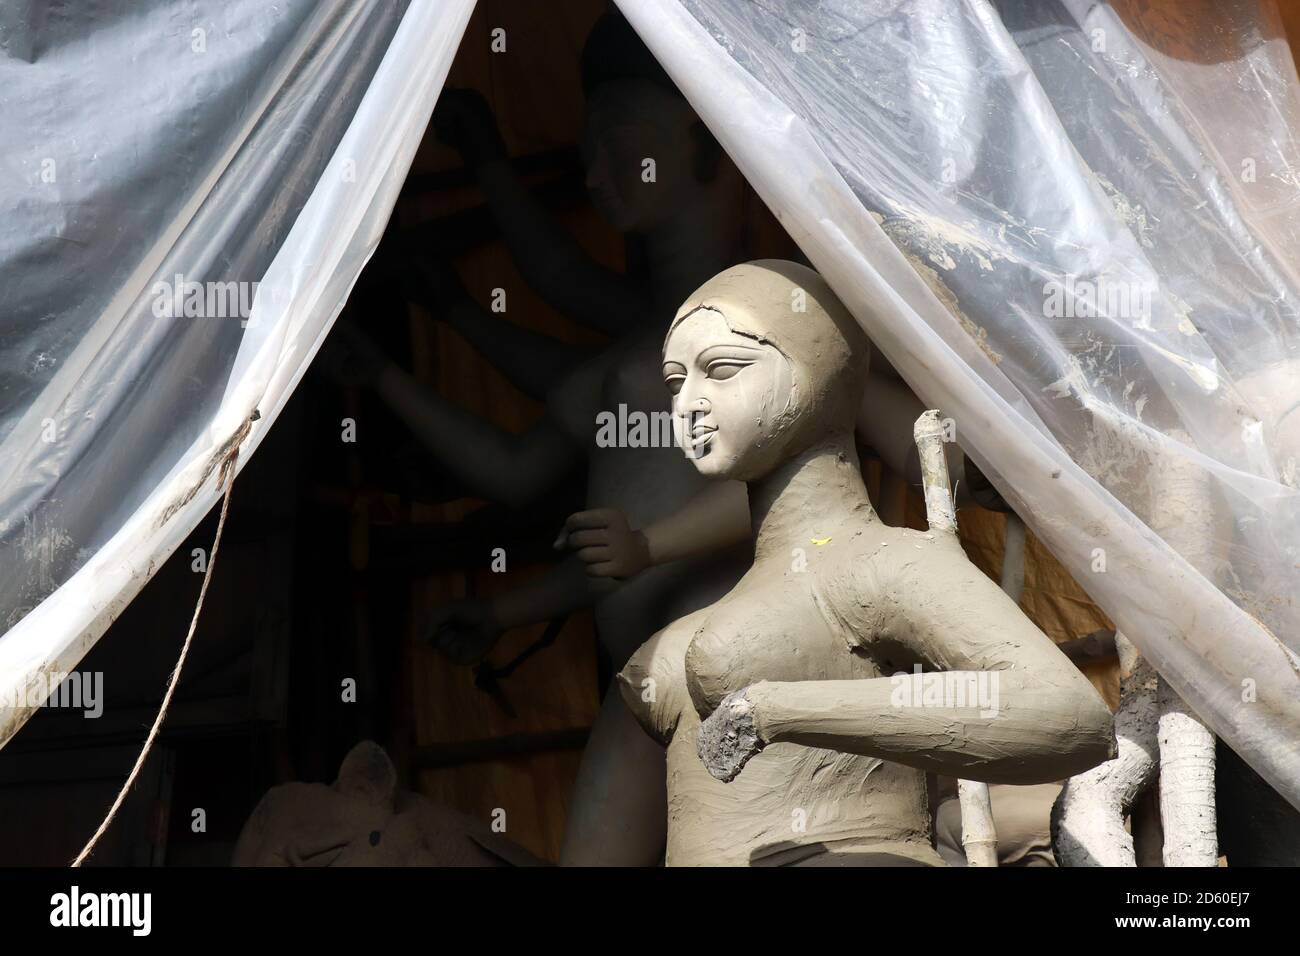 Portrait de Maa Saraswati. L'idole d'argile de la déesse hindoue Saraswati en préparation pour le festival de Durga Puja au Bengale à Kolkata. Banque D'Images